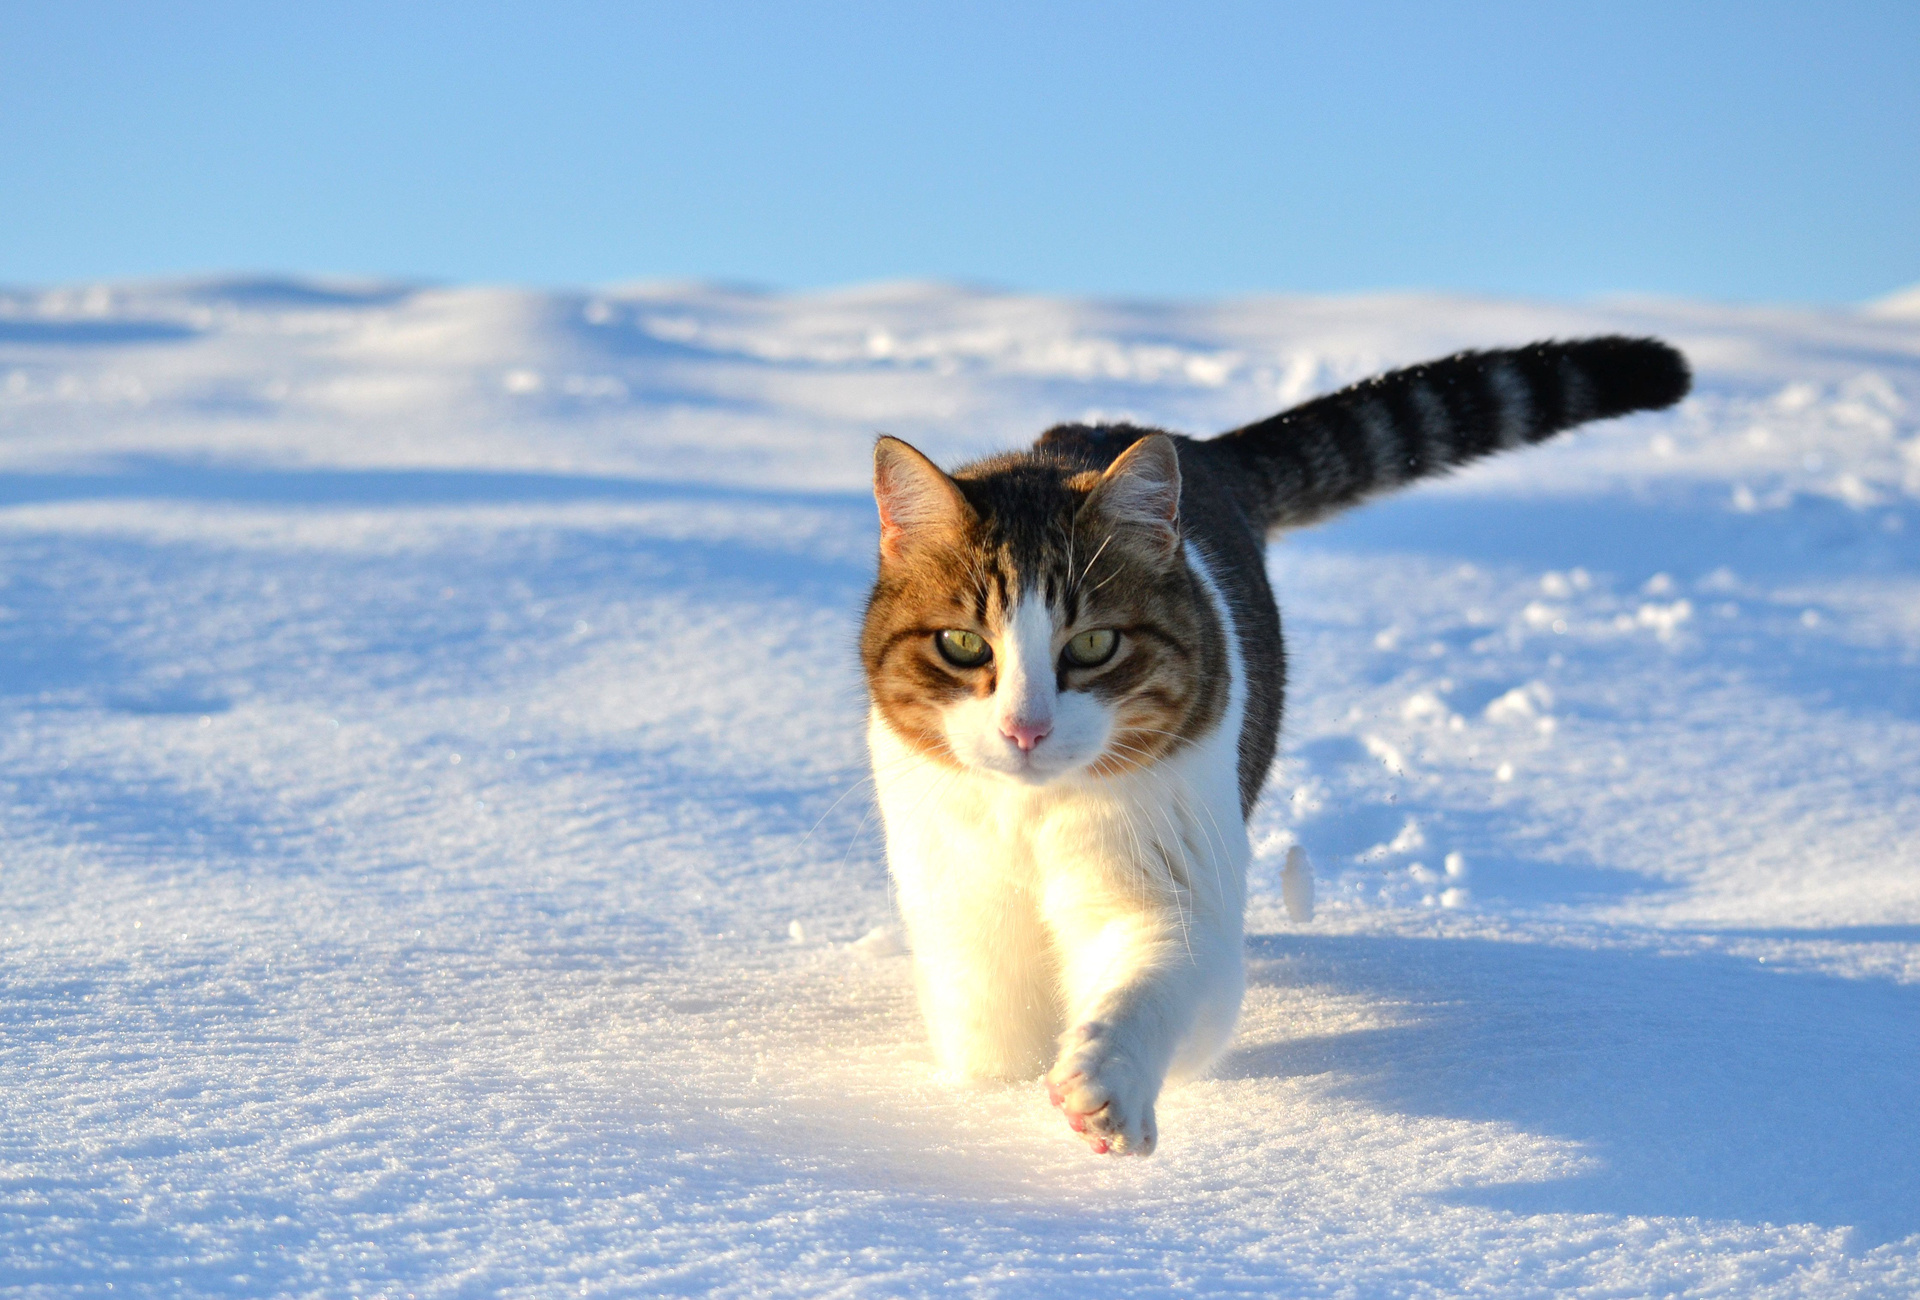 Walk snow winter cat wallpaper 1920x1300 75115 WallpaperUP 1920x1300